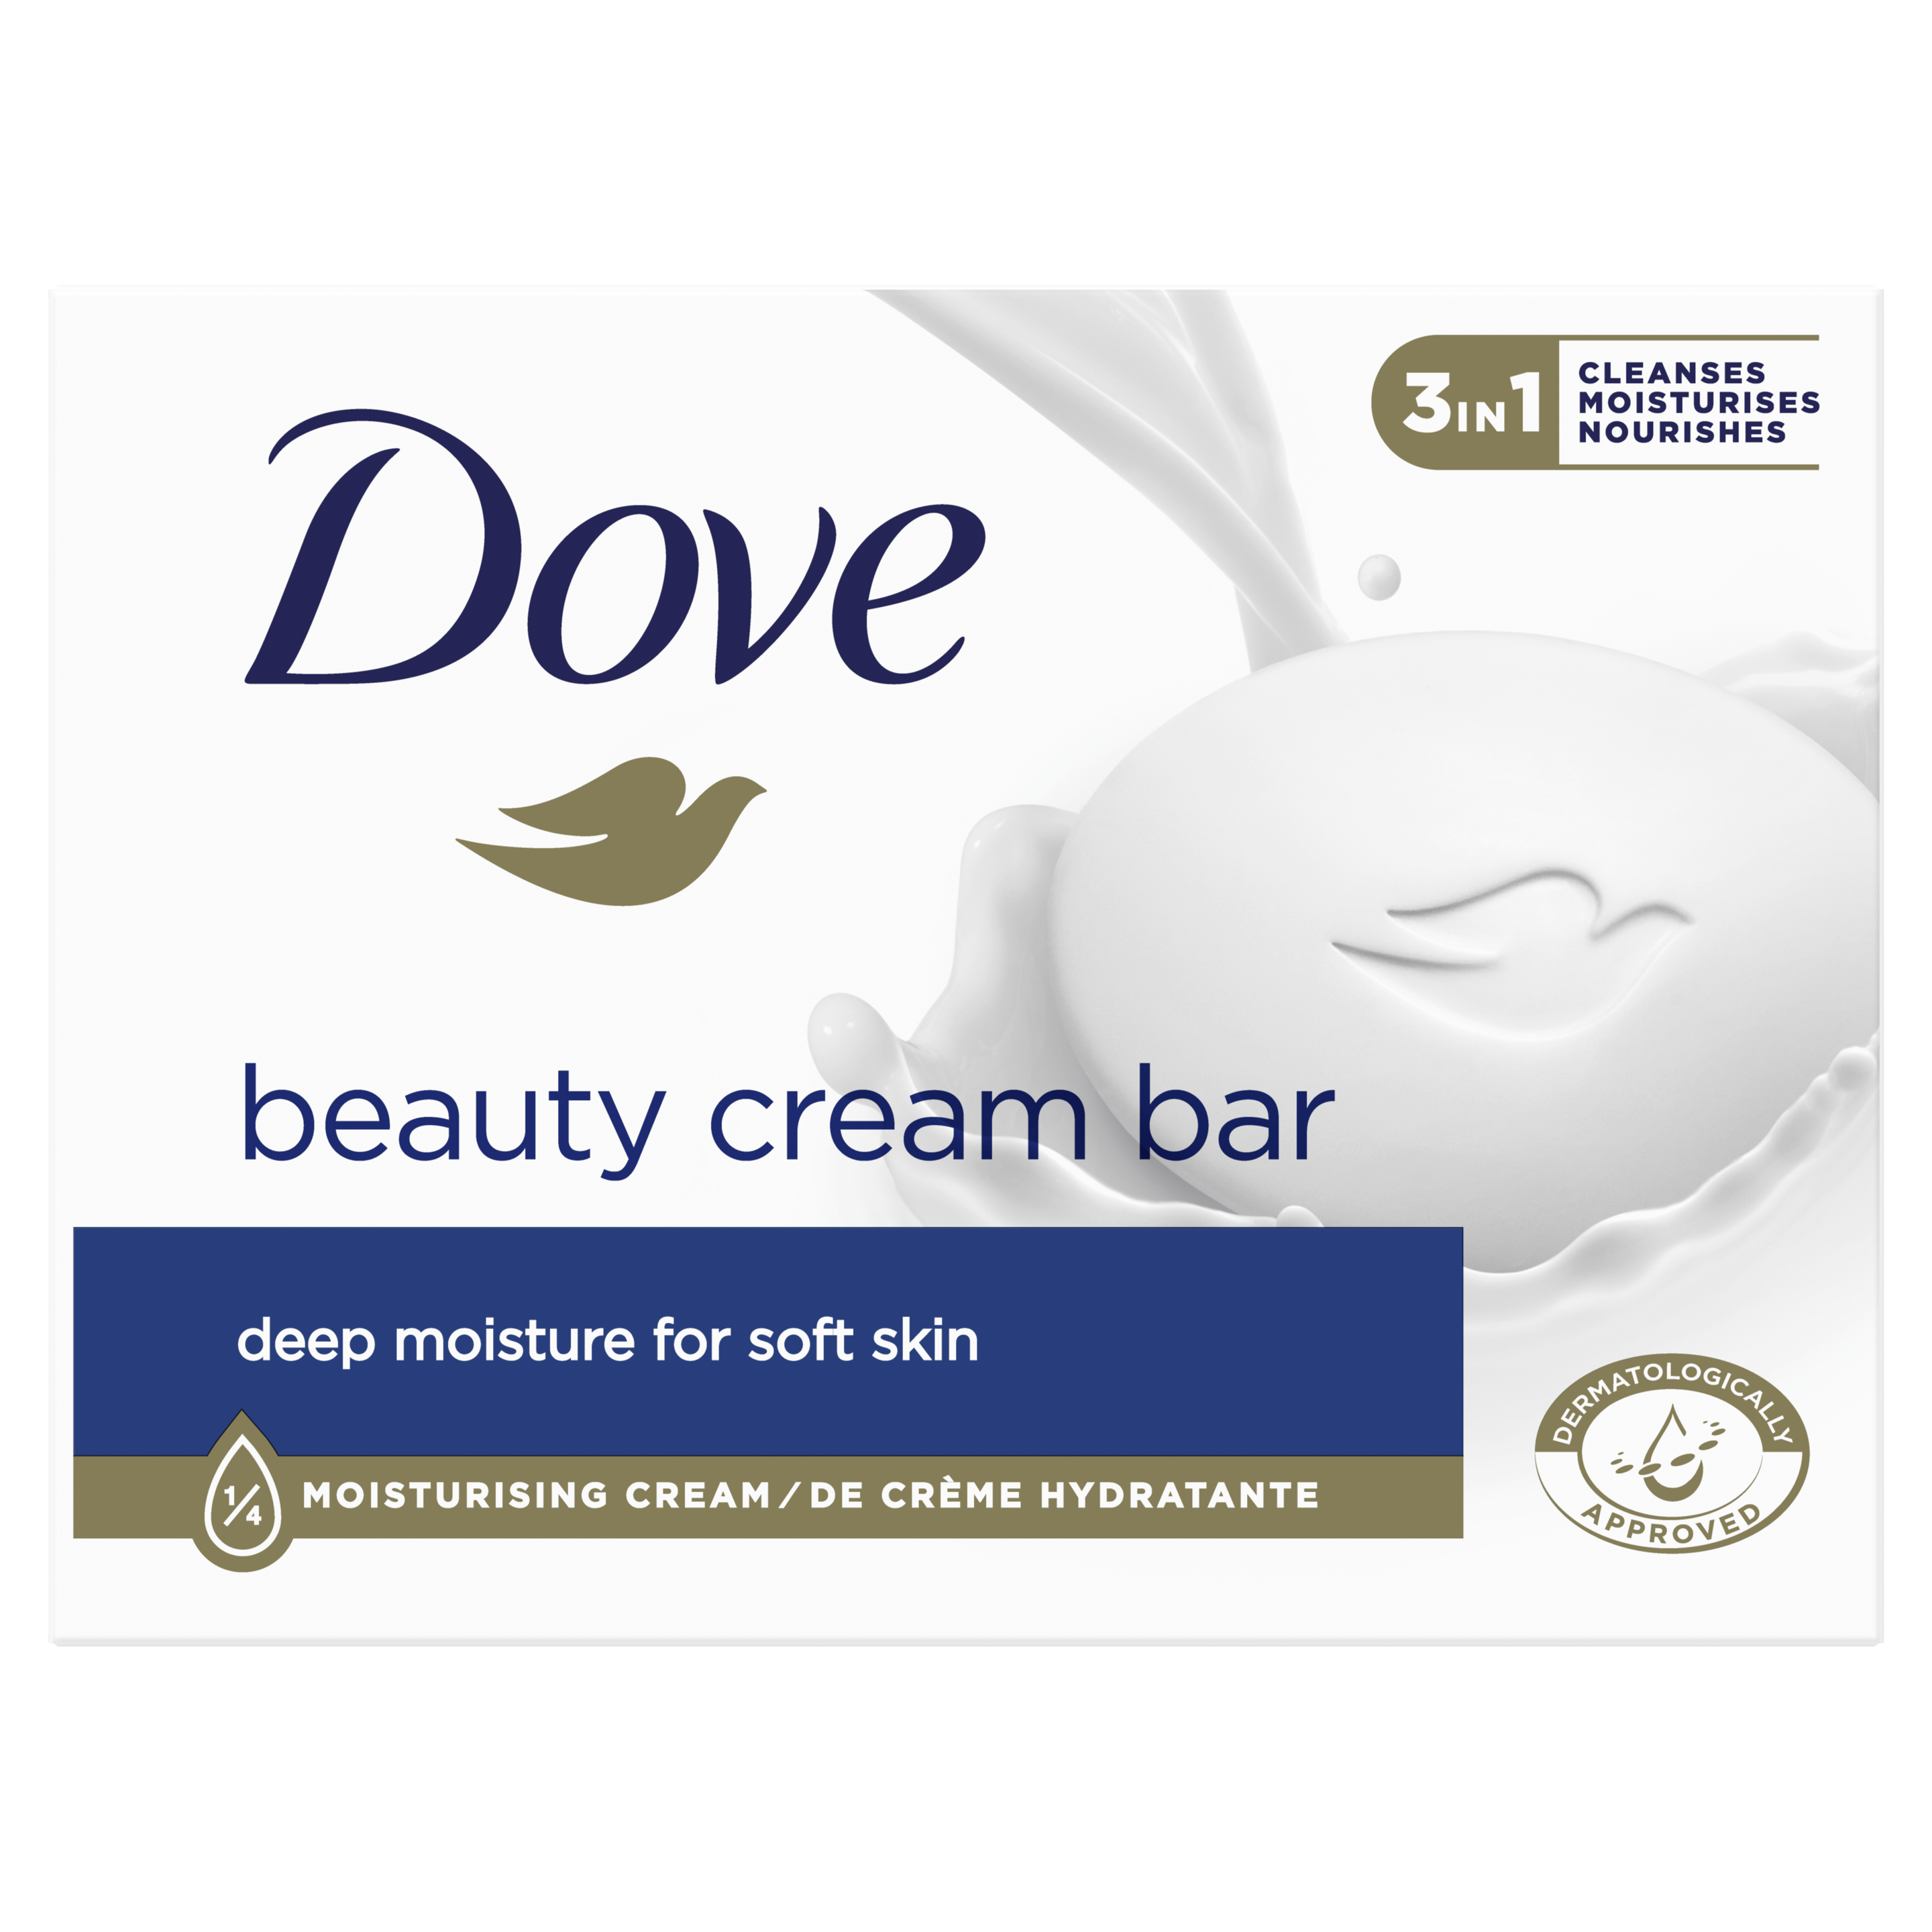 Dove Original Beauty Cream Bar 90g